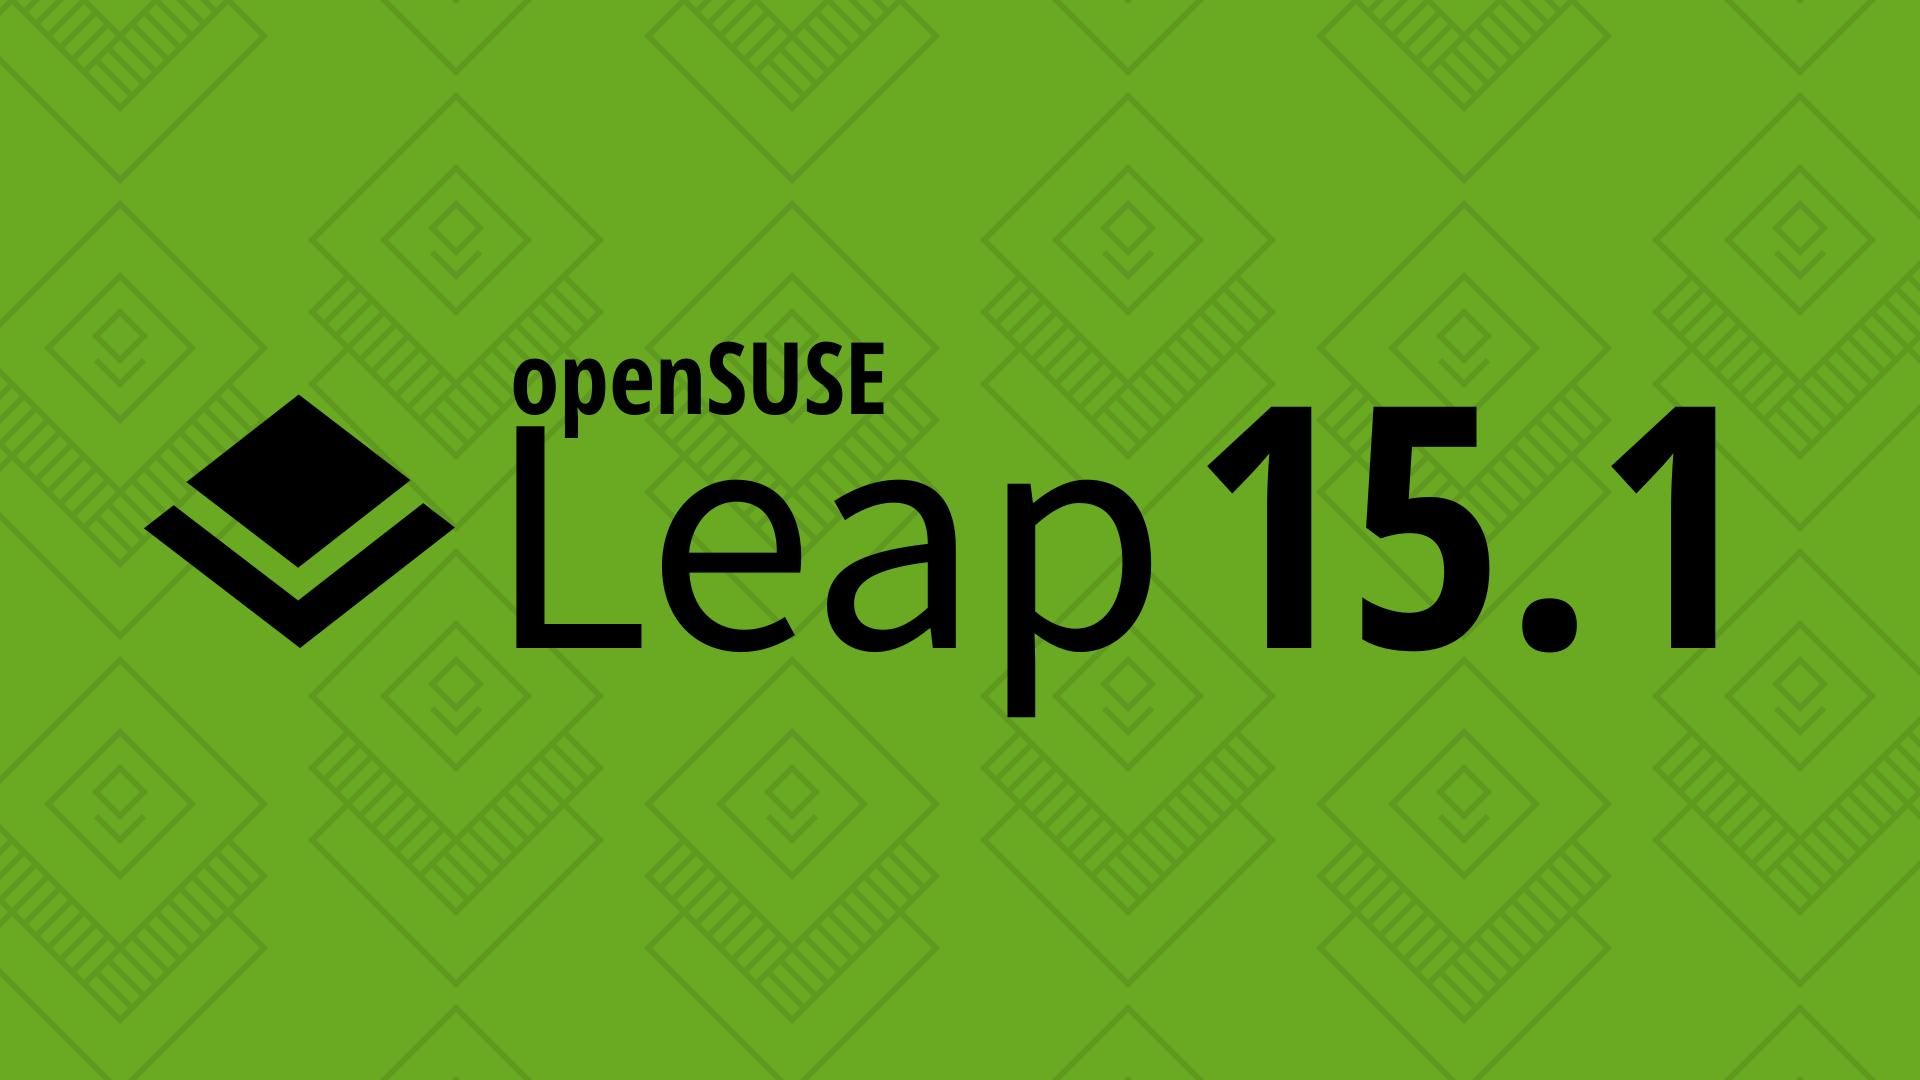 Immagine pubblicata in relazione al seguente contenuto: La distribuzione Linux openSUSE Leap supporta le GPU AMD Vega e i monitor 4K | Nome immagine: news29615_OpenSuse-Leap-15.1_1.jpeg